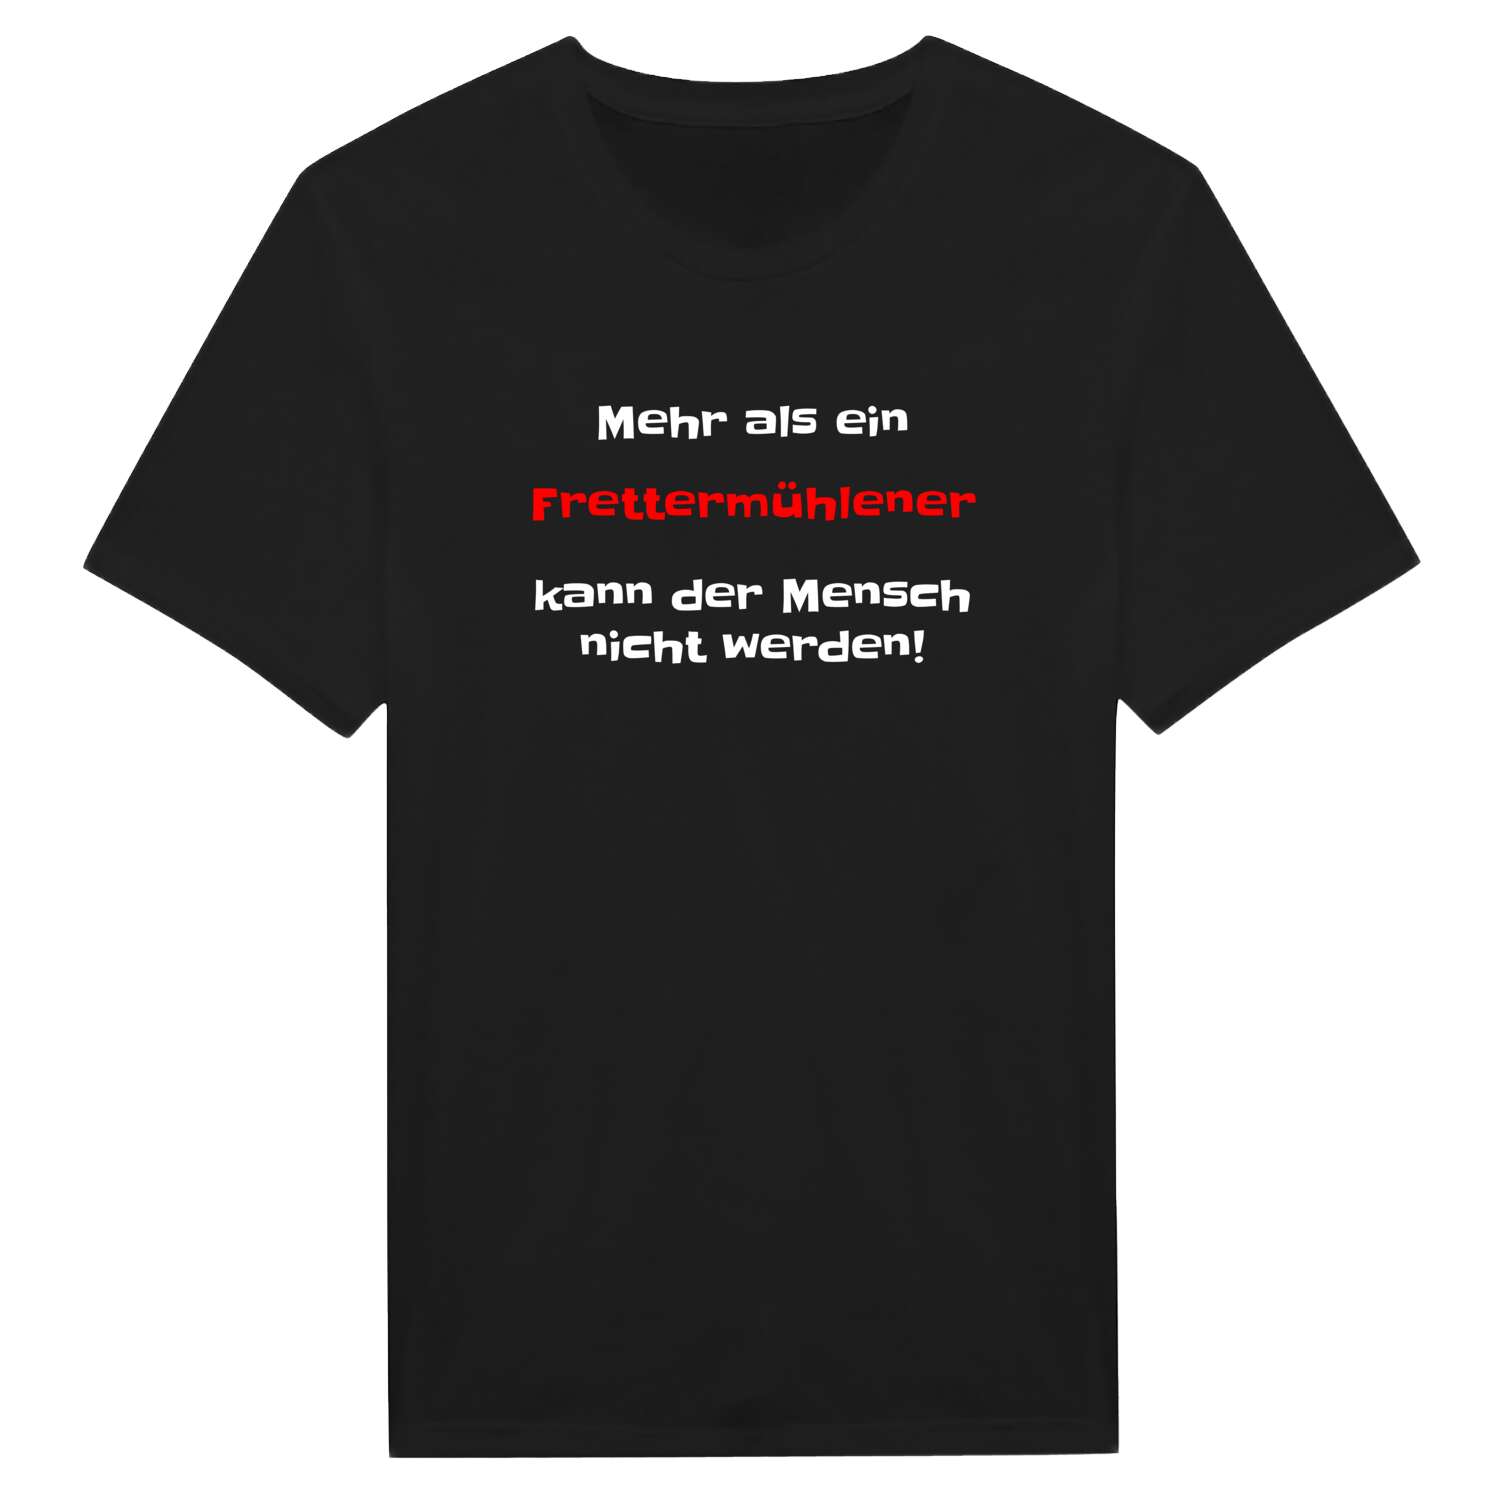 Frettermühle T-Shirt »Mehr als ein«